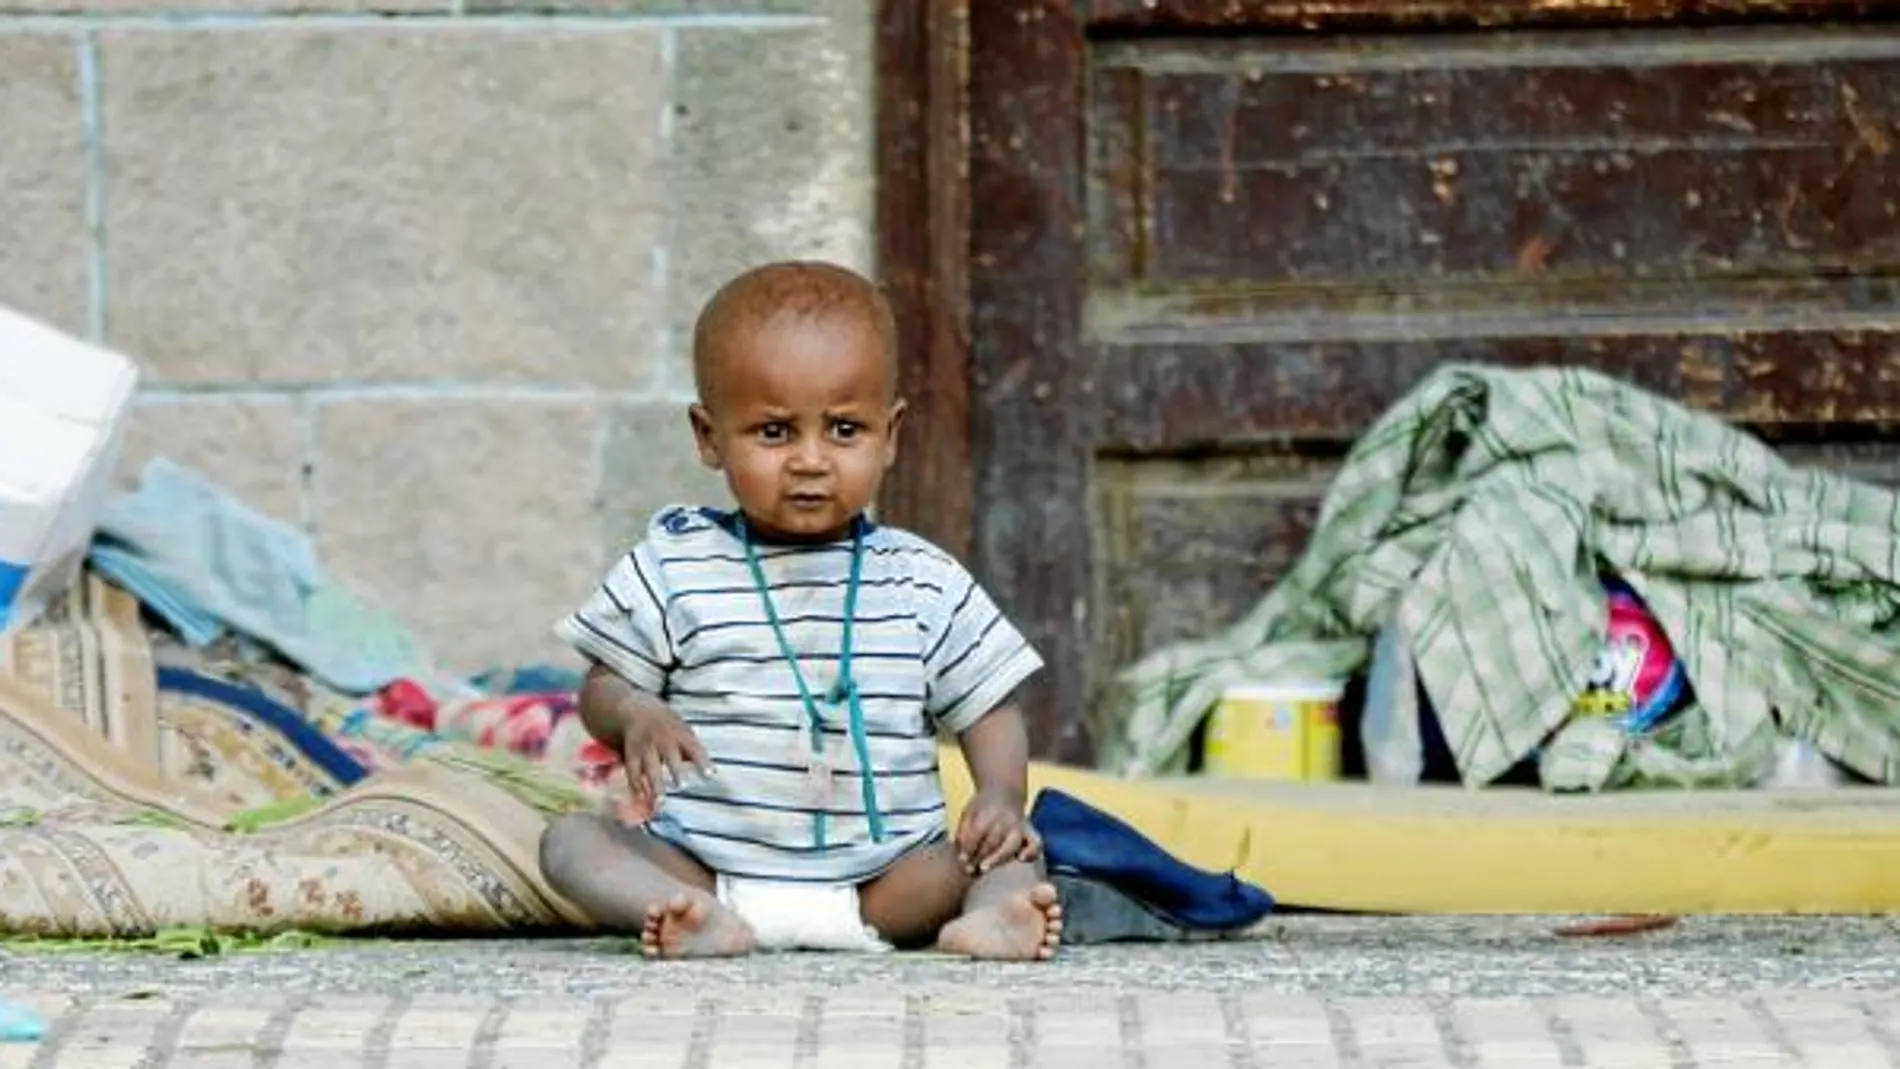 La guerra en Yemen ha hecho que 8,4 millones de personas estén en peligro de muerte por falta de alimentos y medicinas, según la ONU. Un niño fallece cada diez minutos en el país